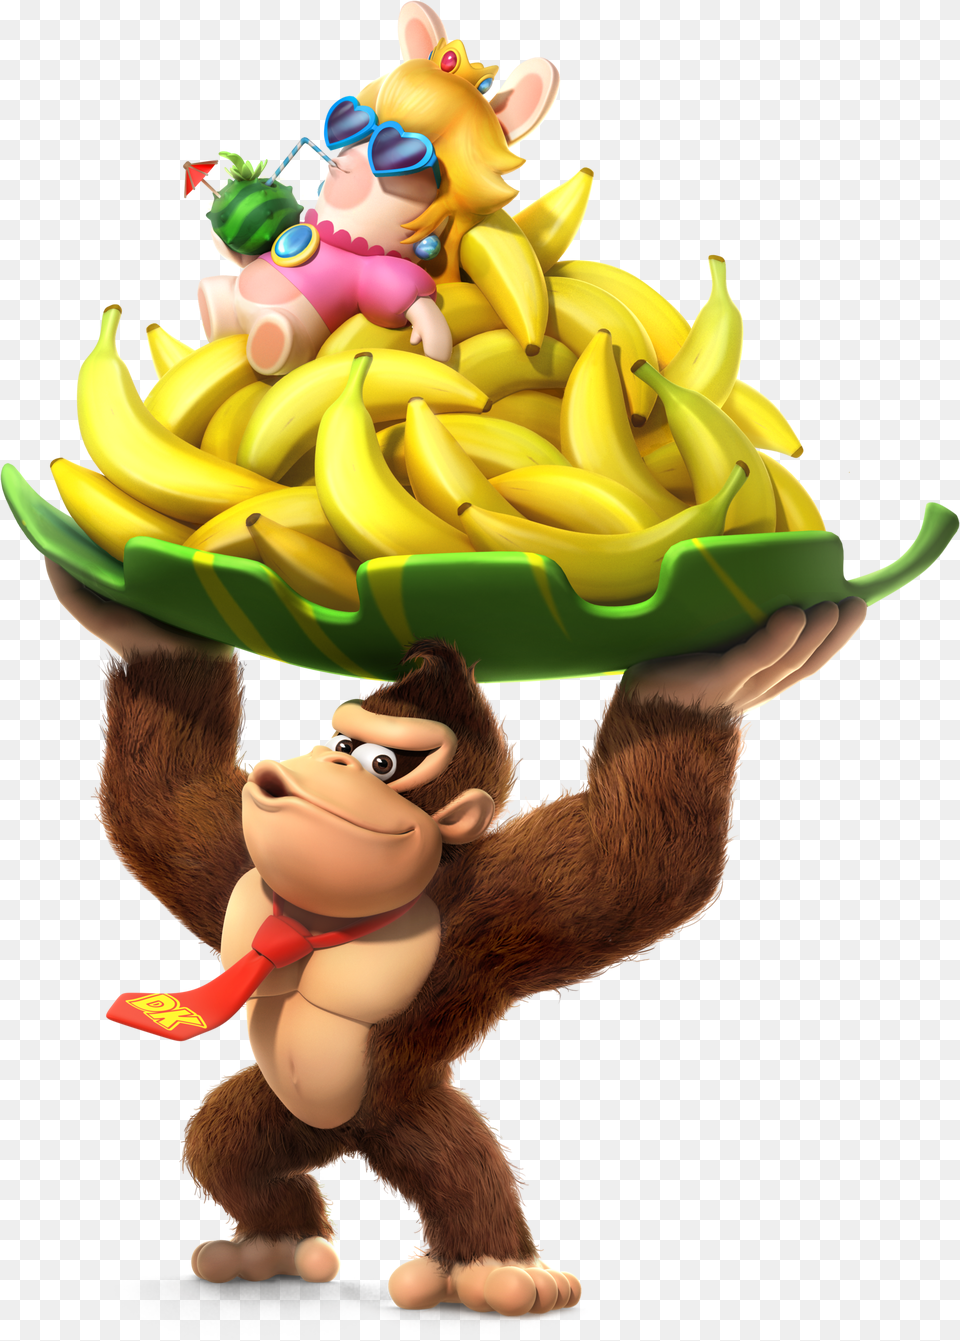 Donkey Kong Mario Rabbids Png Image